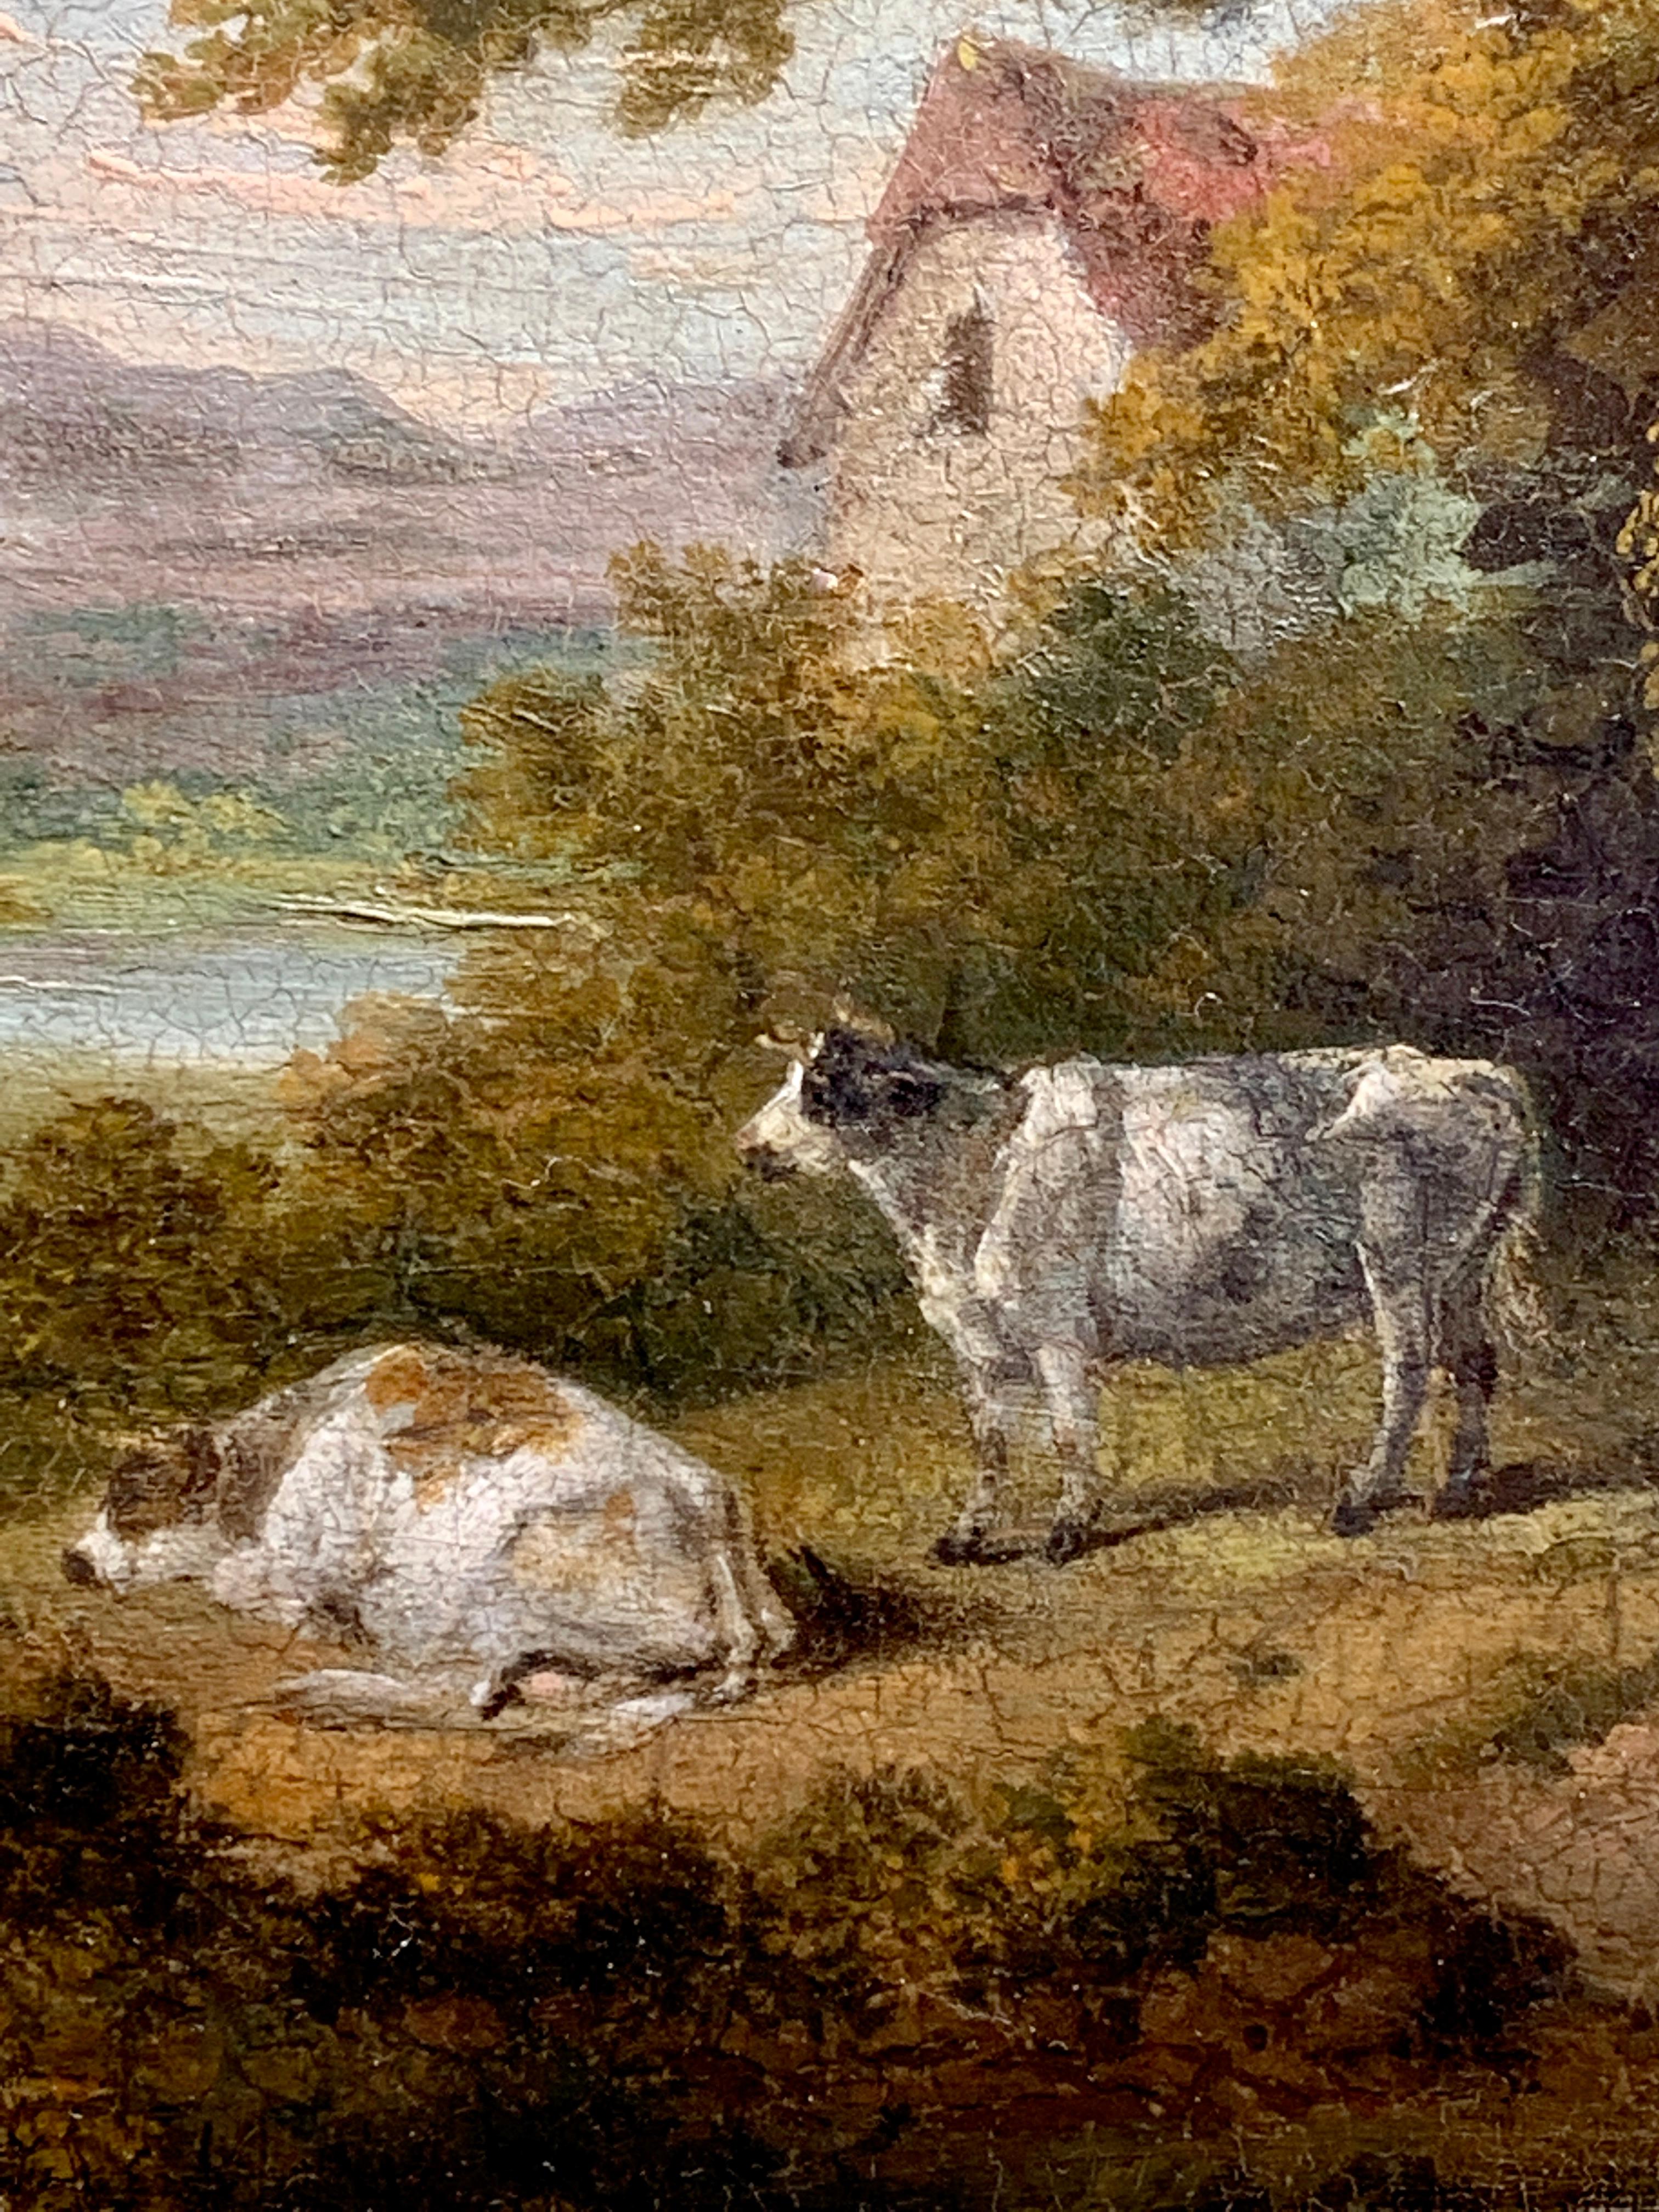 Merveilleux et exceptionnel exemple de l'un des peintres anglais les plus connus et les plus appréciés des XVIIIe et XIXe siècles. Morland était un peintre anglais qui est devenu l'un des artistes les plus populaires de son époque. Ses œuvres font